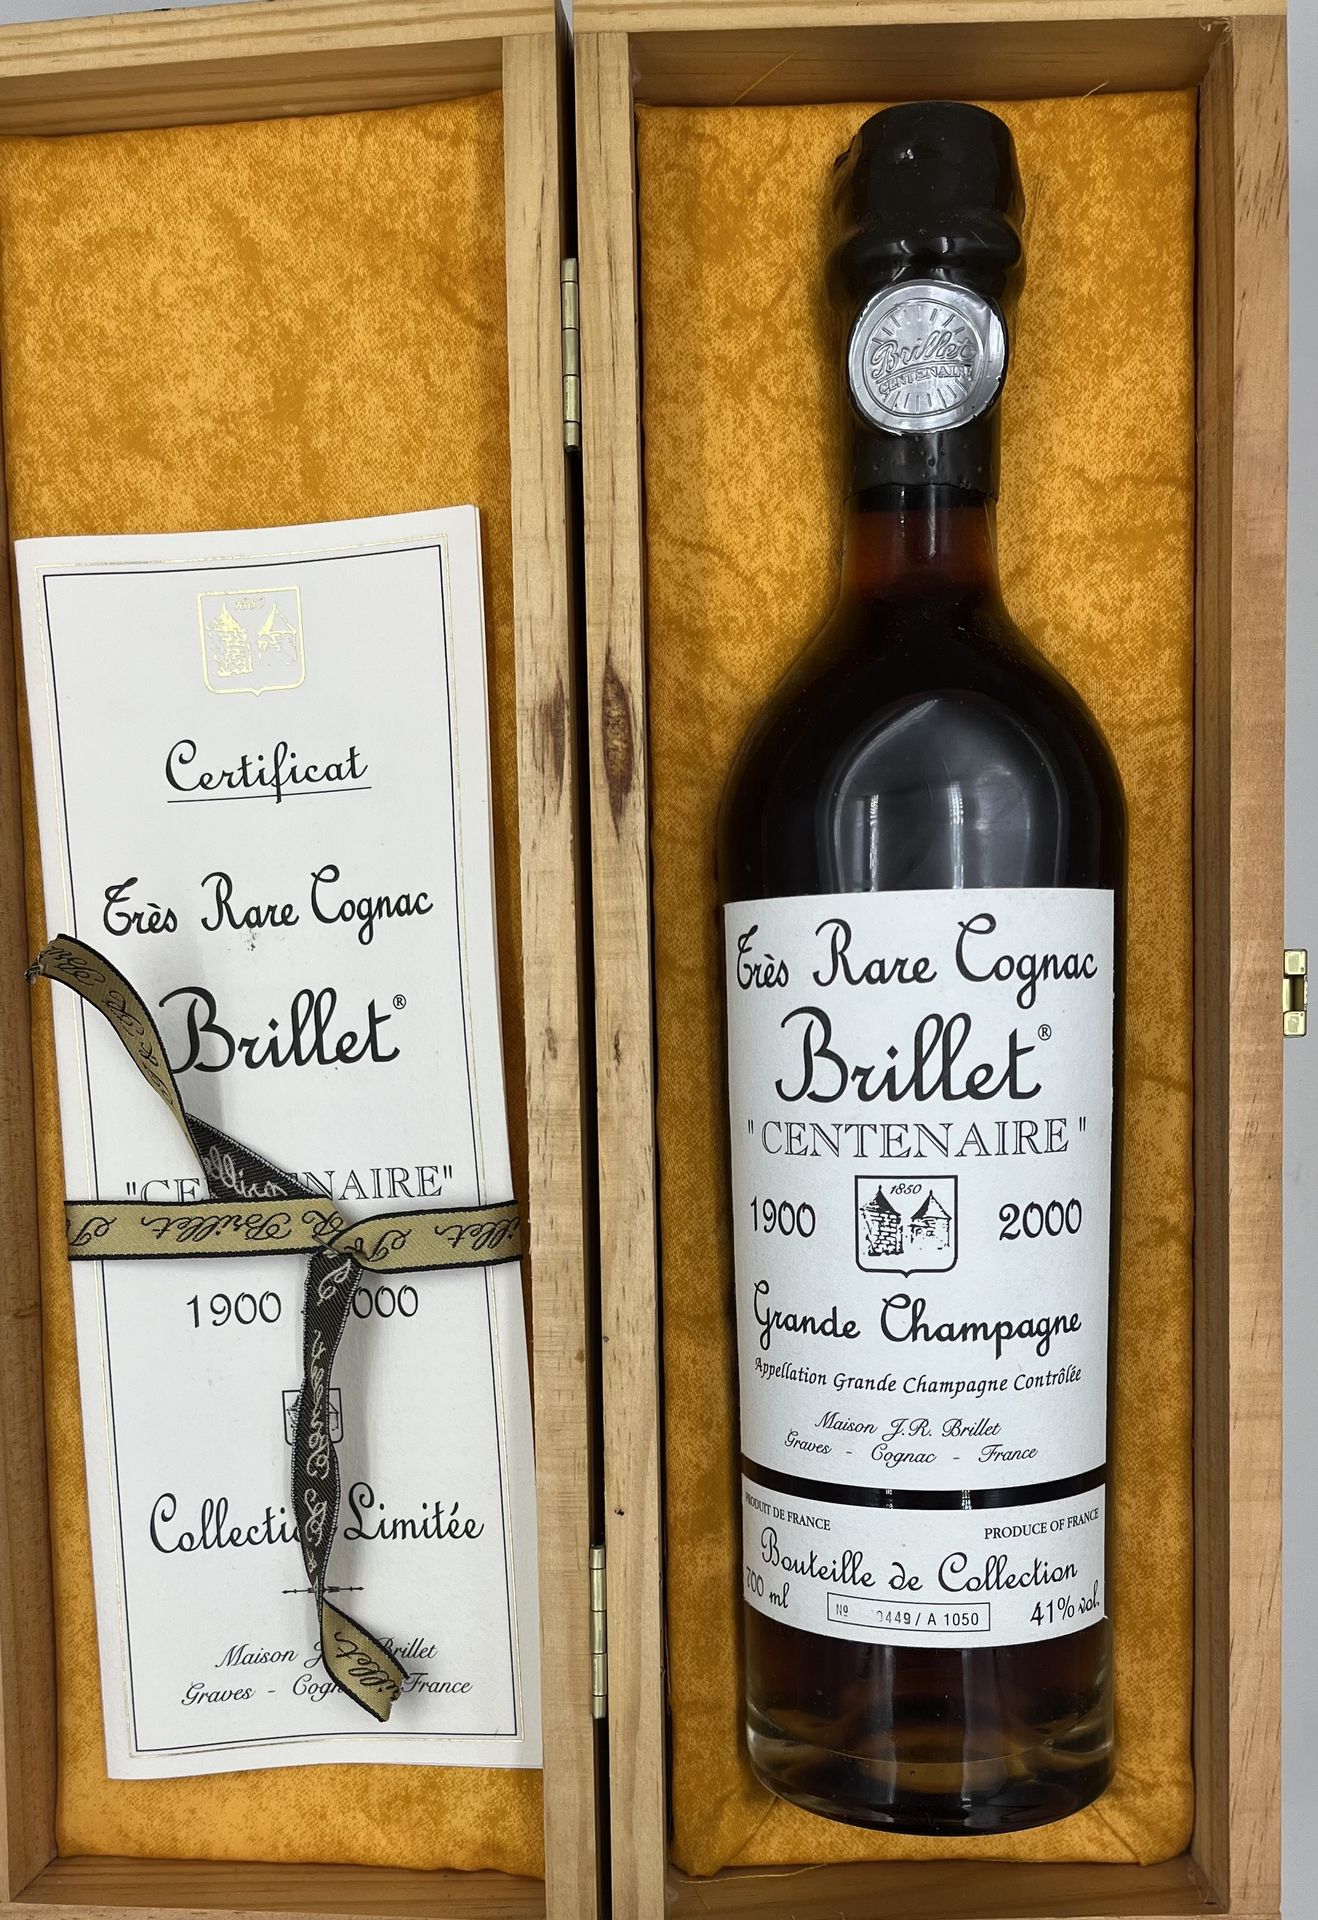 1 blle Grande Champagne Très rare Cognac BRILLET "Centenaire" 1900 - 2000 70 cl &hellip;